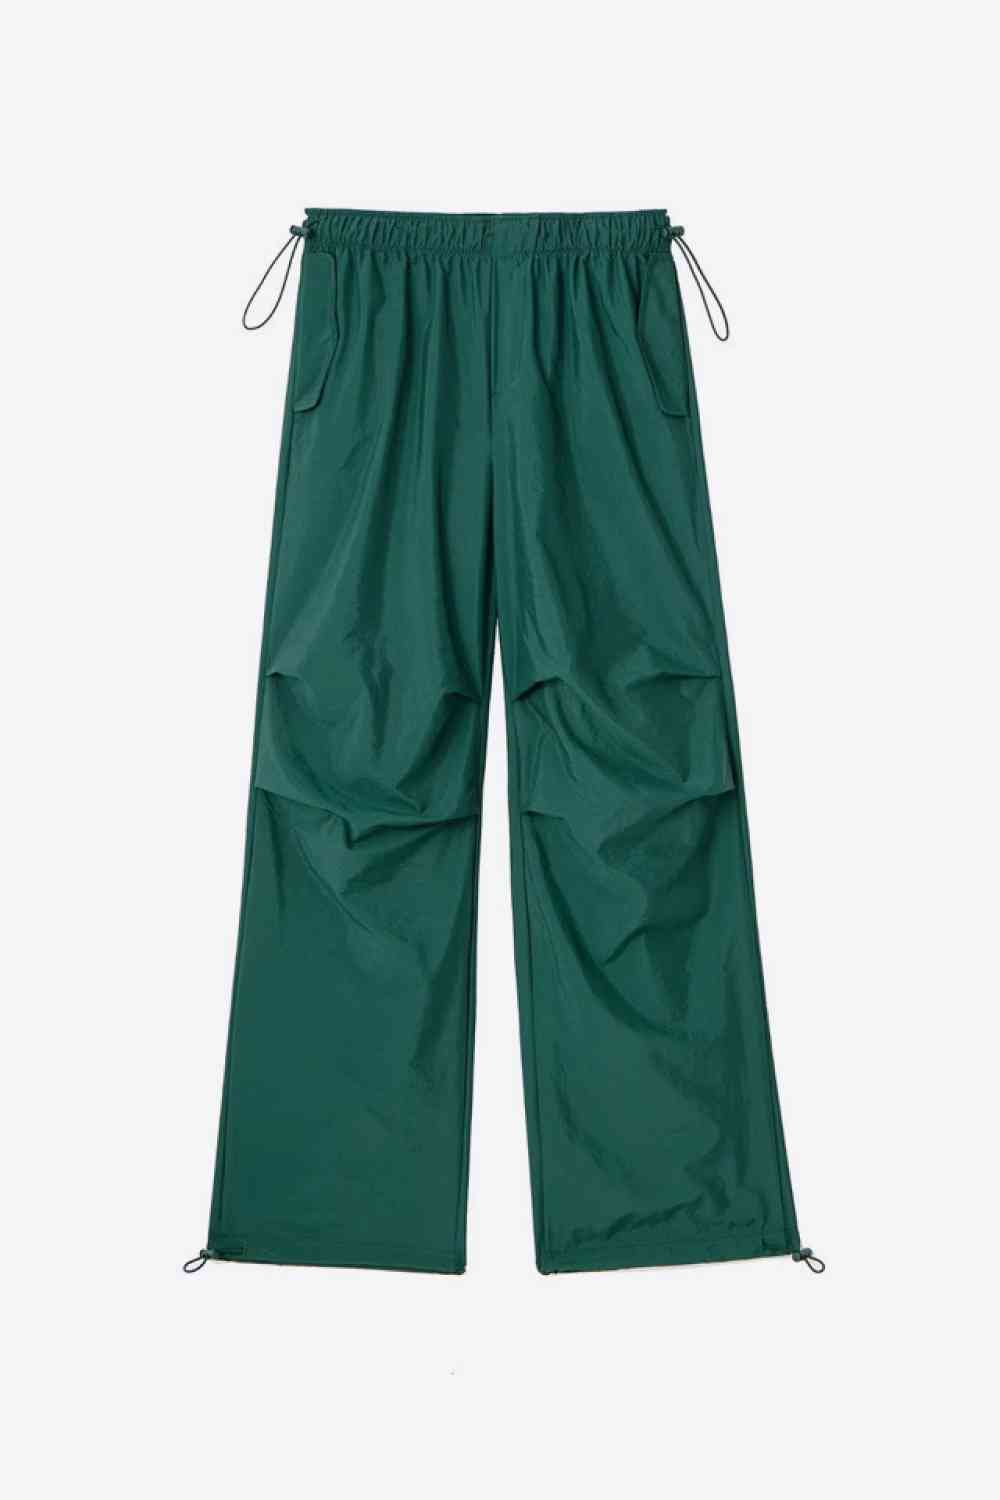 Pantalones con cordón en la cintura y bolsillos